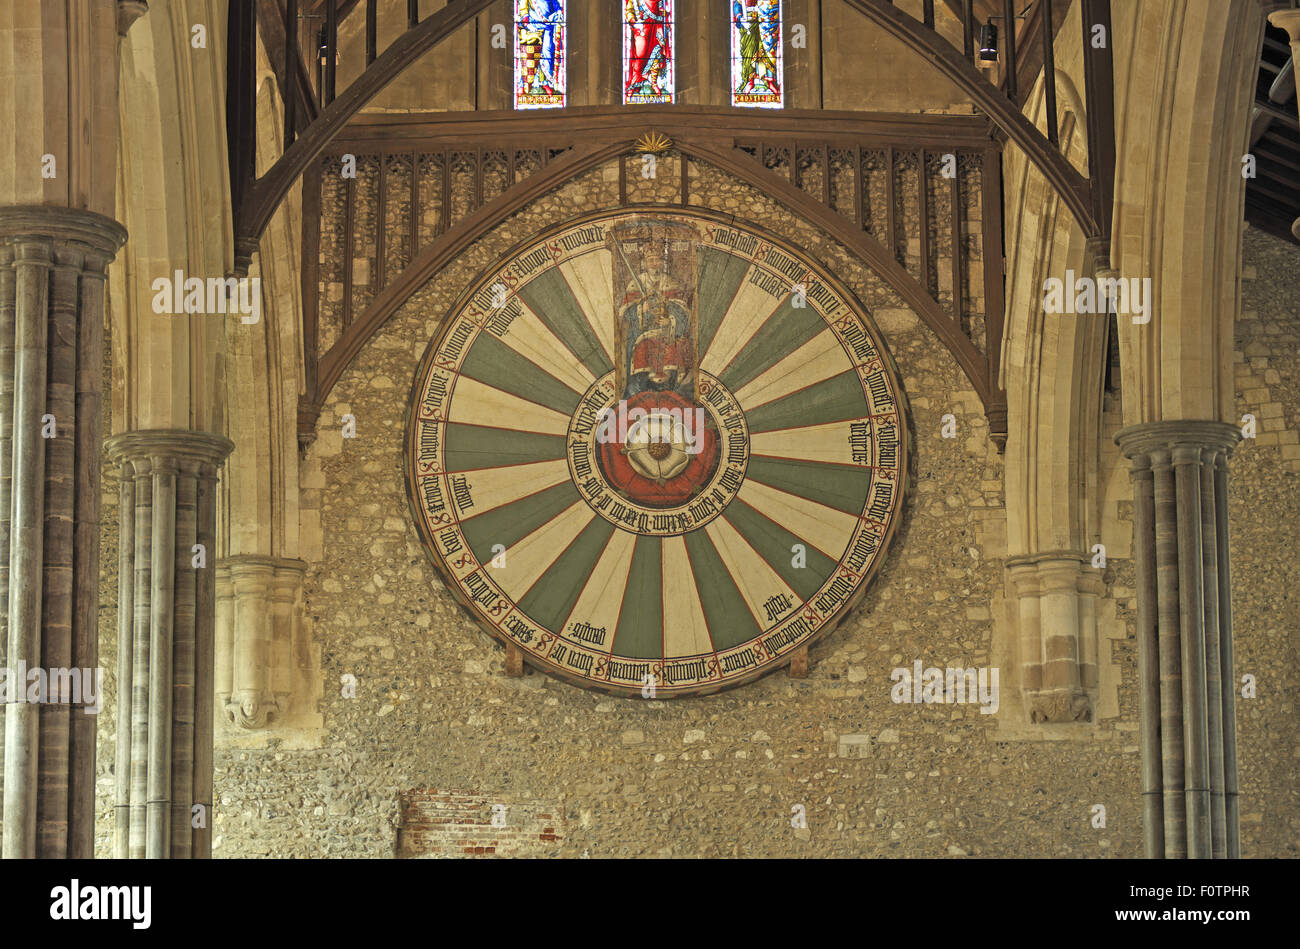 La table ronde du Roi Arthur, le grand hall, château de Winchester, Winchester, Hampshire, England, UK. Banque D'Images